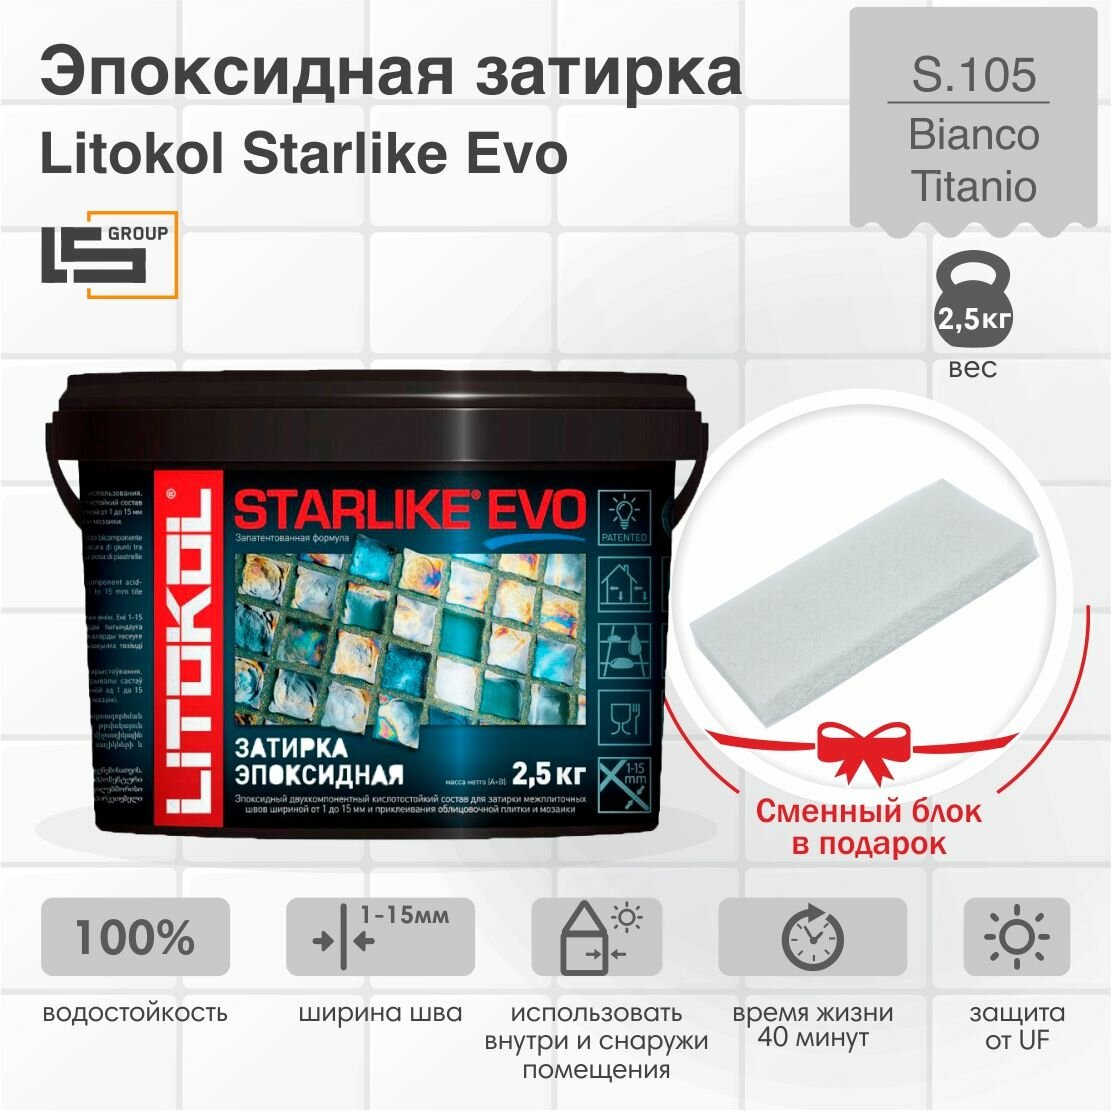 Затирка для плитки эпоксидная LITOKOL STARLIKE EVO (старлайк ЭВО) S.105 BIANCO TITANIO 25кг + Сменный блок в подарок